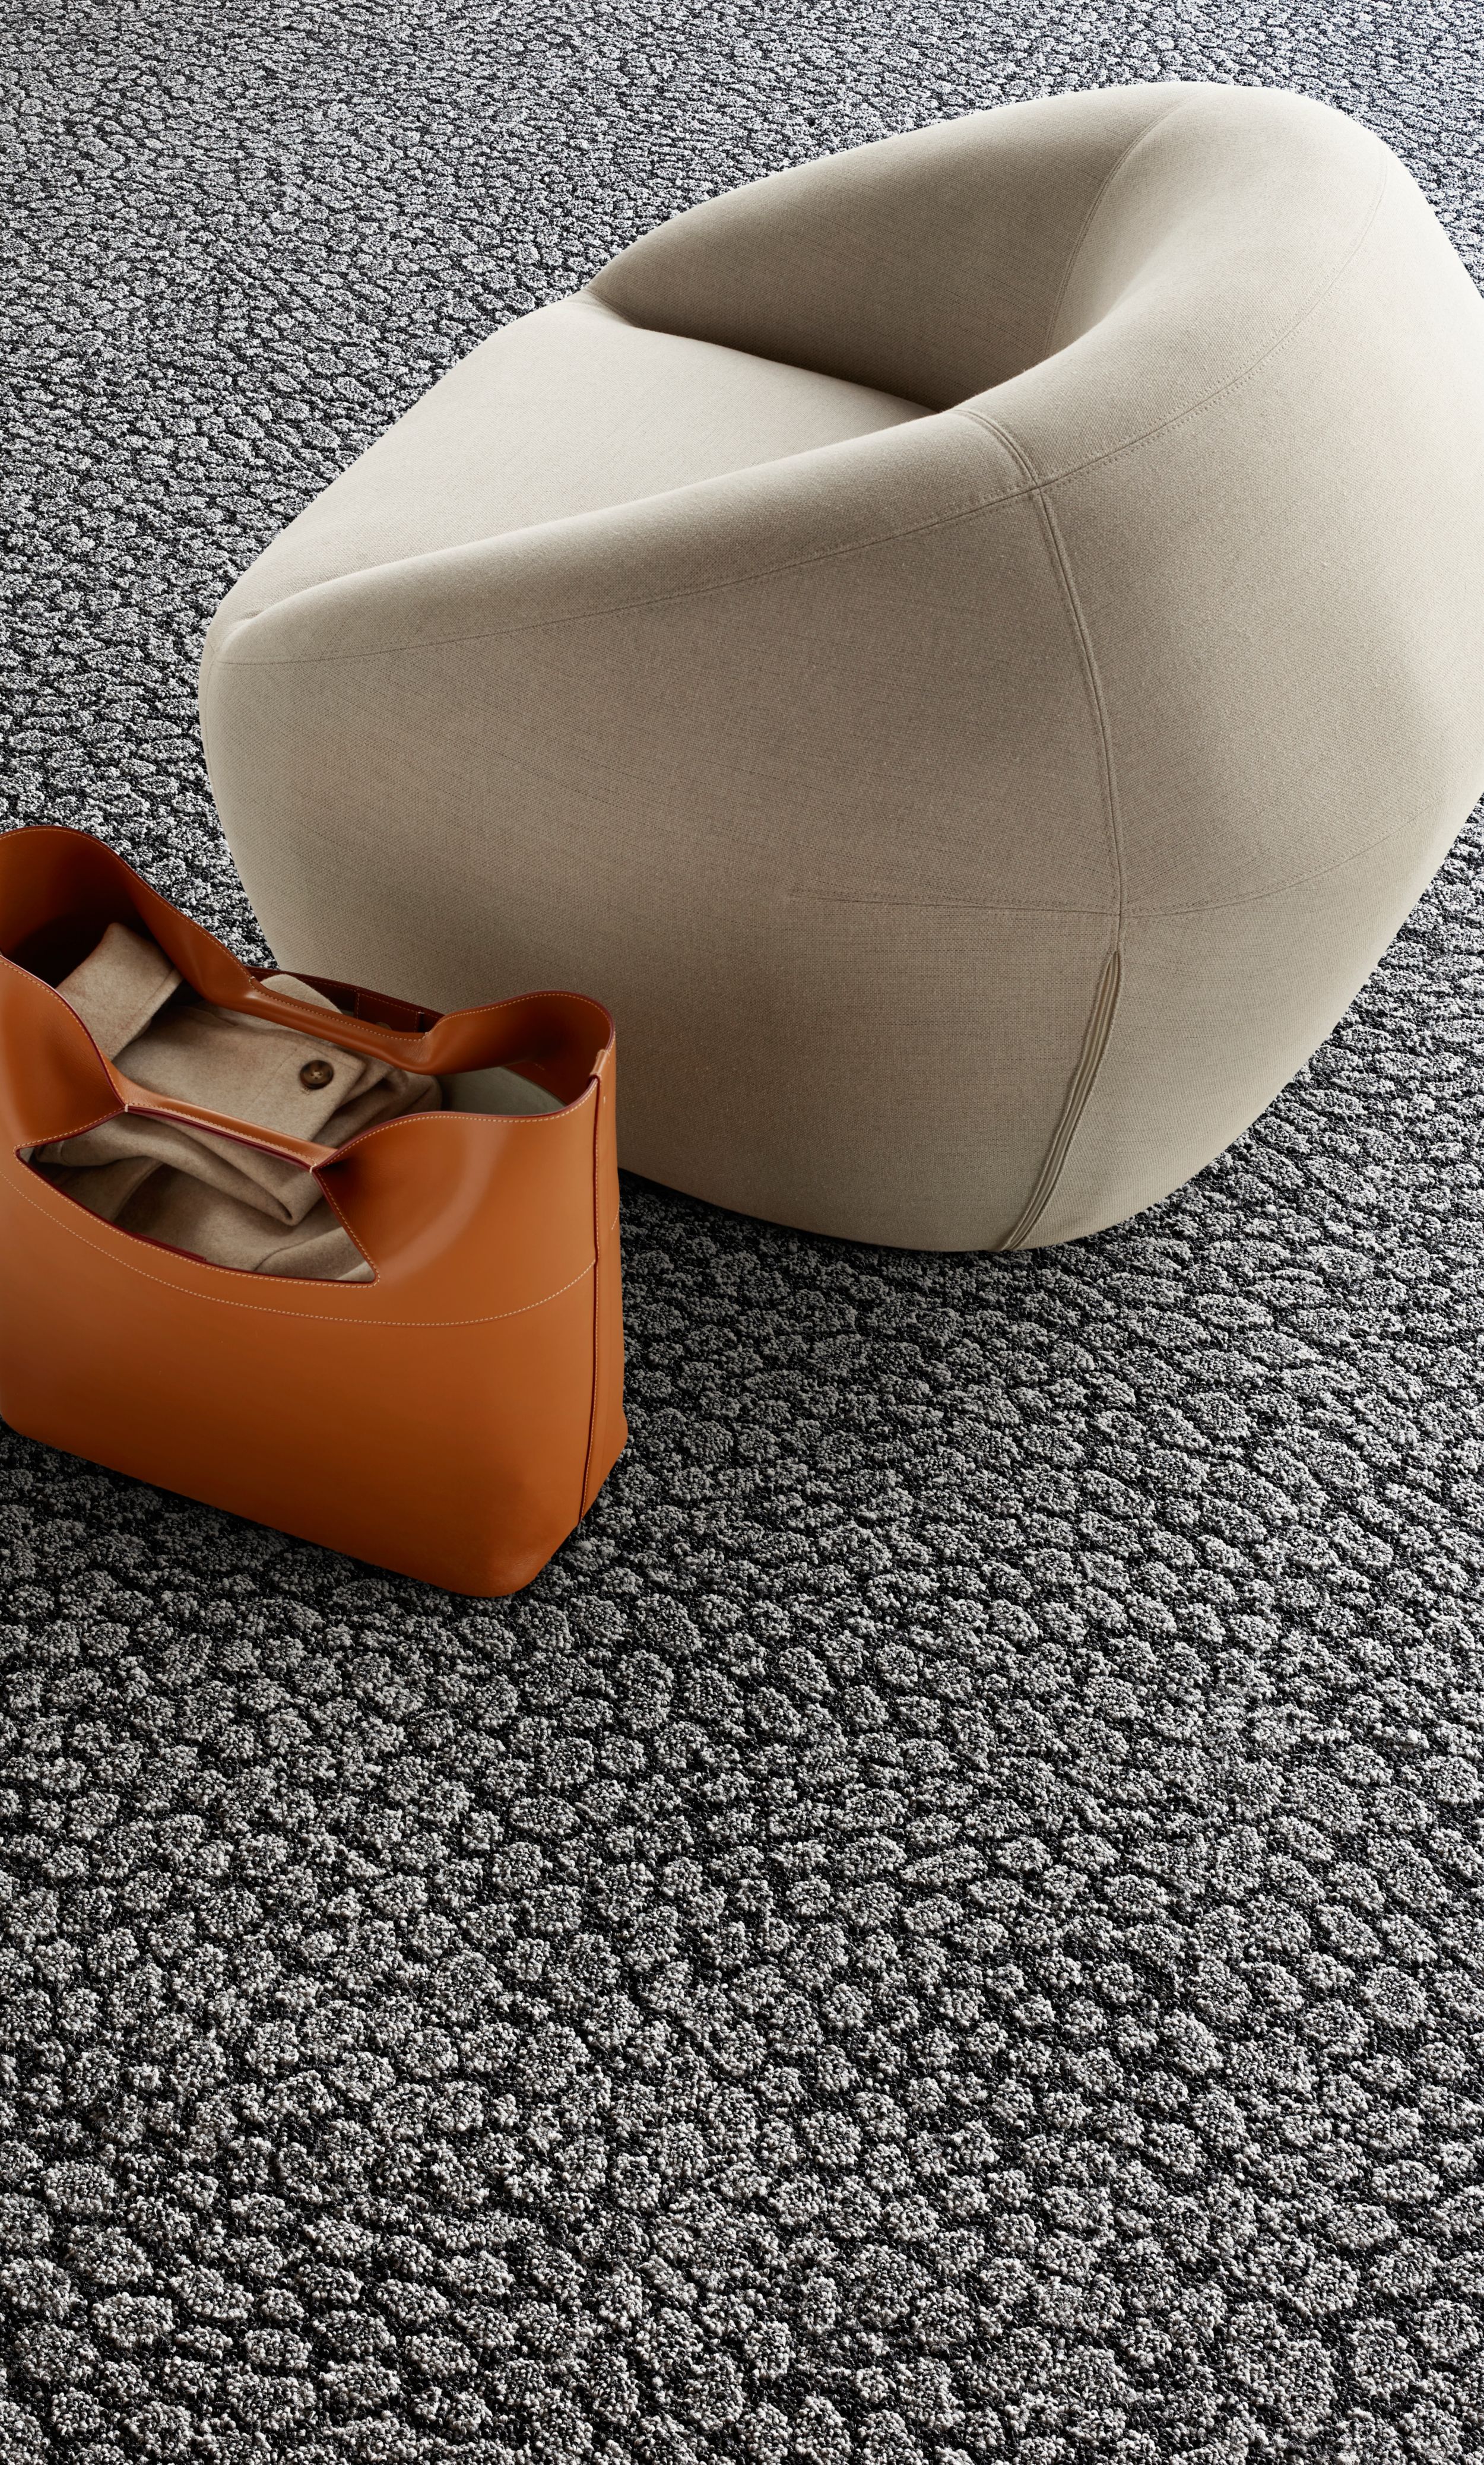 Interface E611 carpet tile detail with low chair and orange tote número de imagen 2